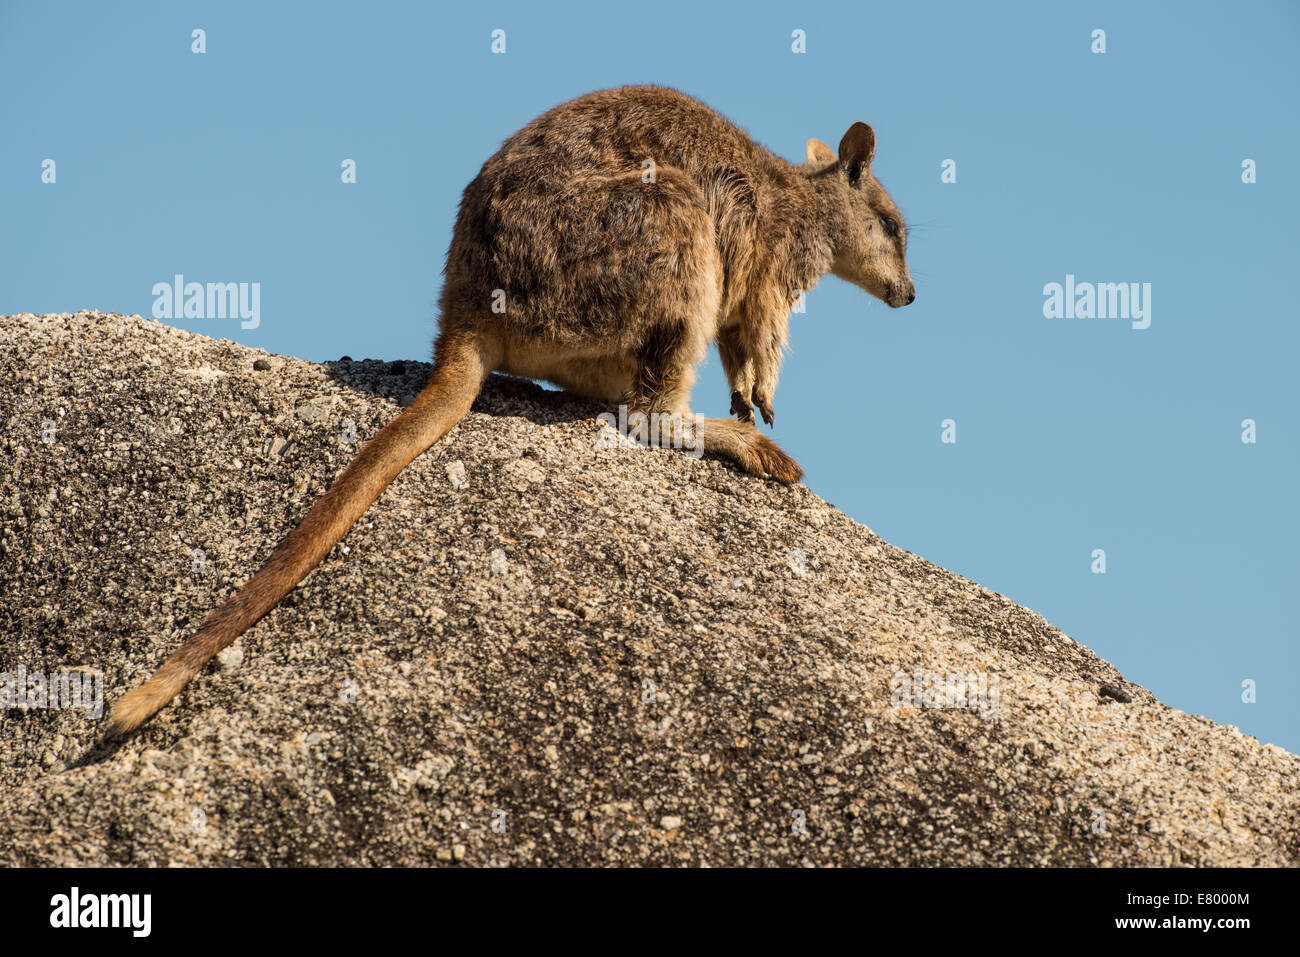 Stock Foto von Mareeba schlichten Rock Wallaby sitzen oben auf einem Felsblock. Stockfoto